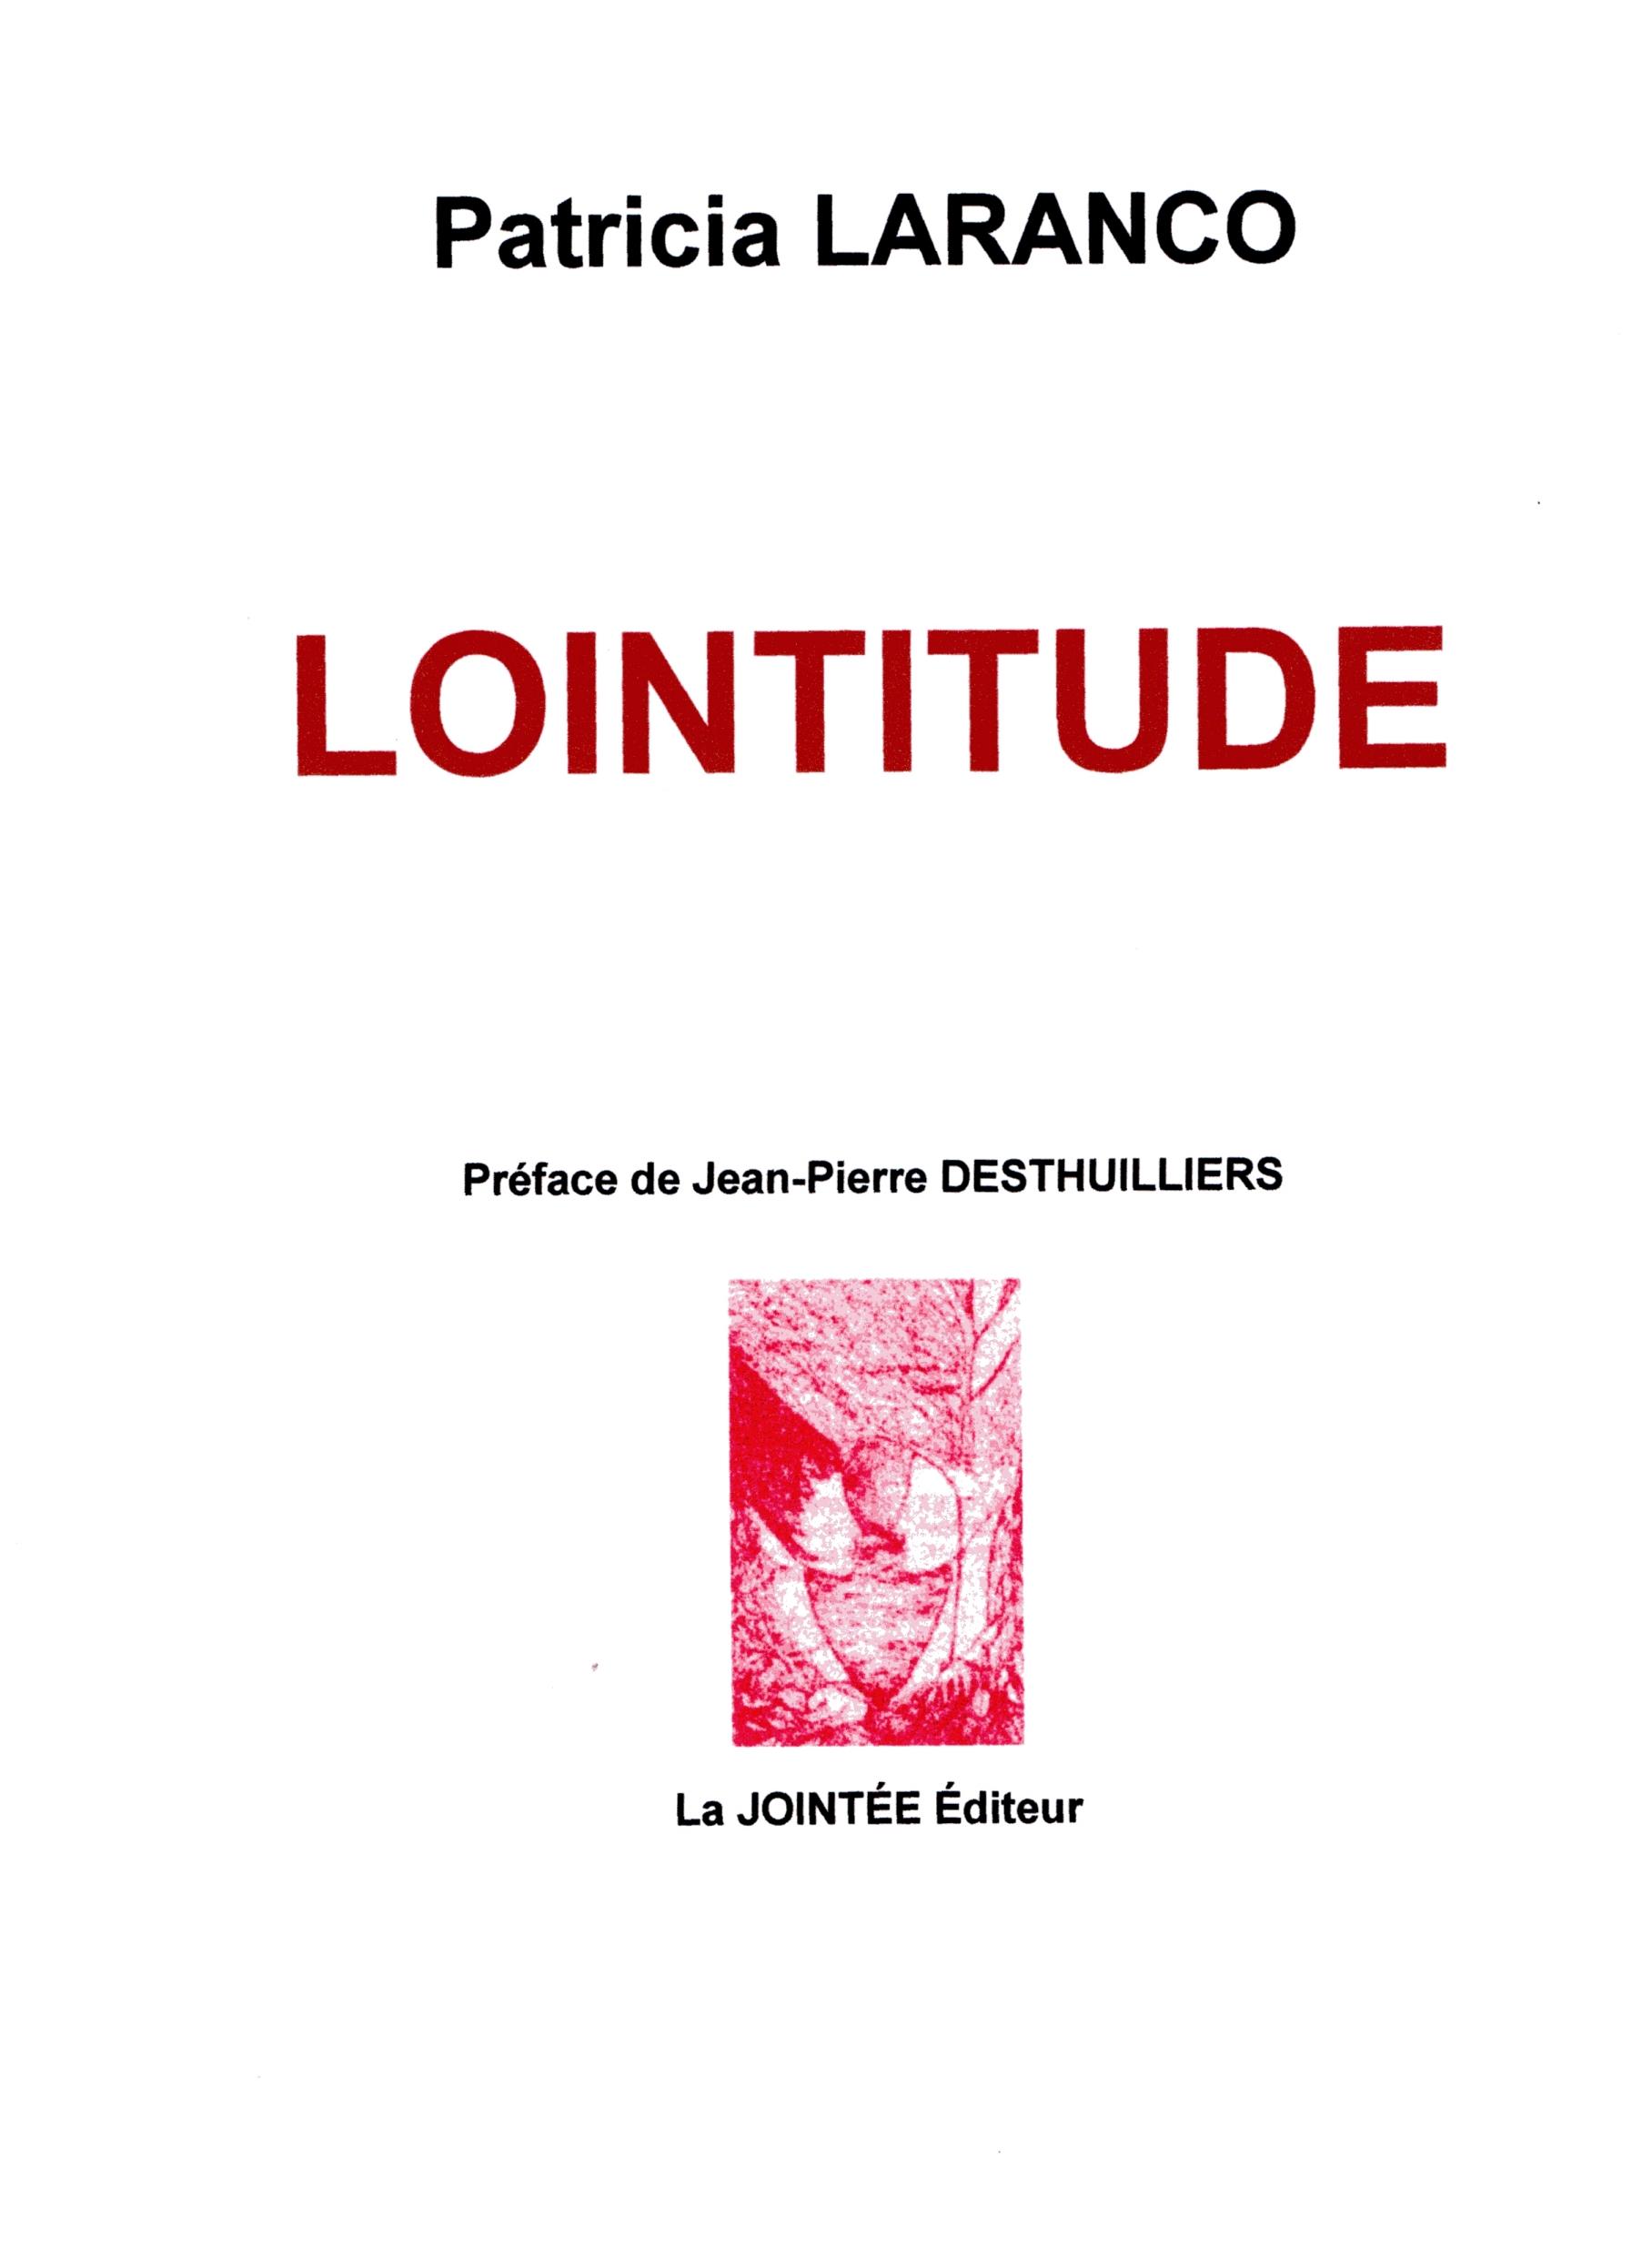 Vient de paraître : LOINTITUDE, recueil de Patricia Laranco.